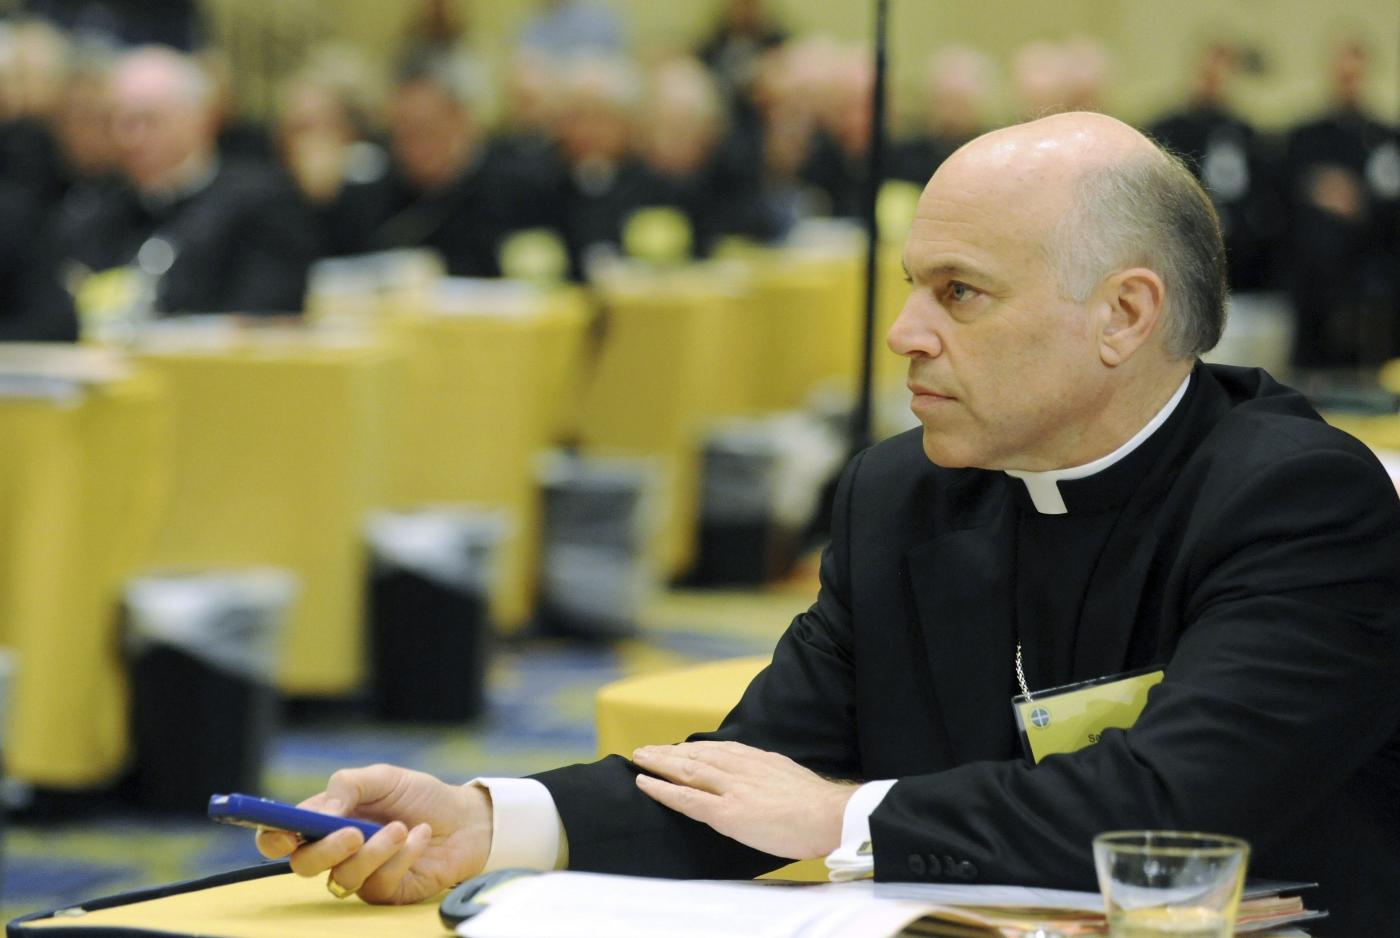 Nozze gay, l’arcivescovo di San Francisco resiste: «Non è cristiano pensare che la storia sia irreversibile» 1